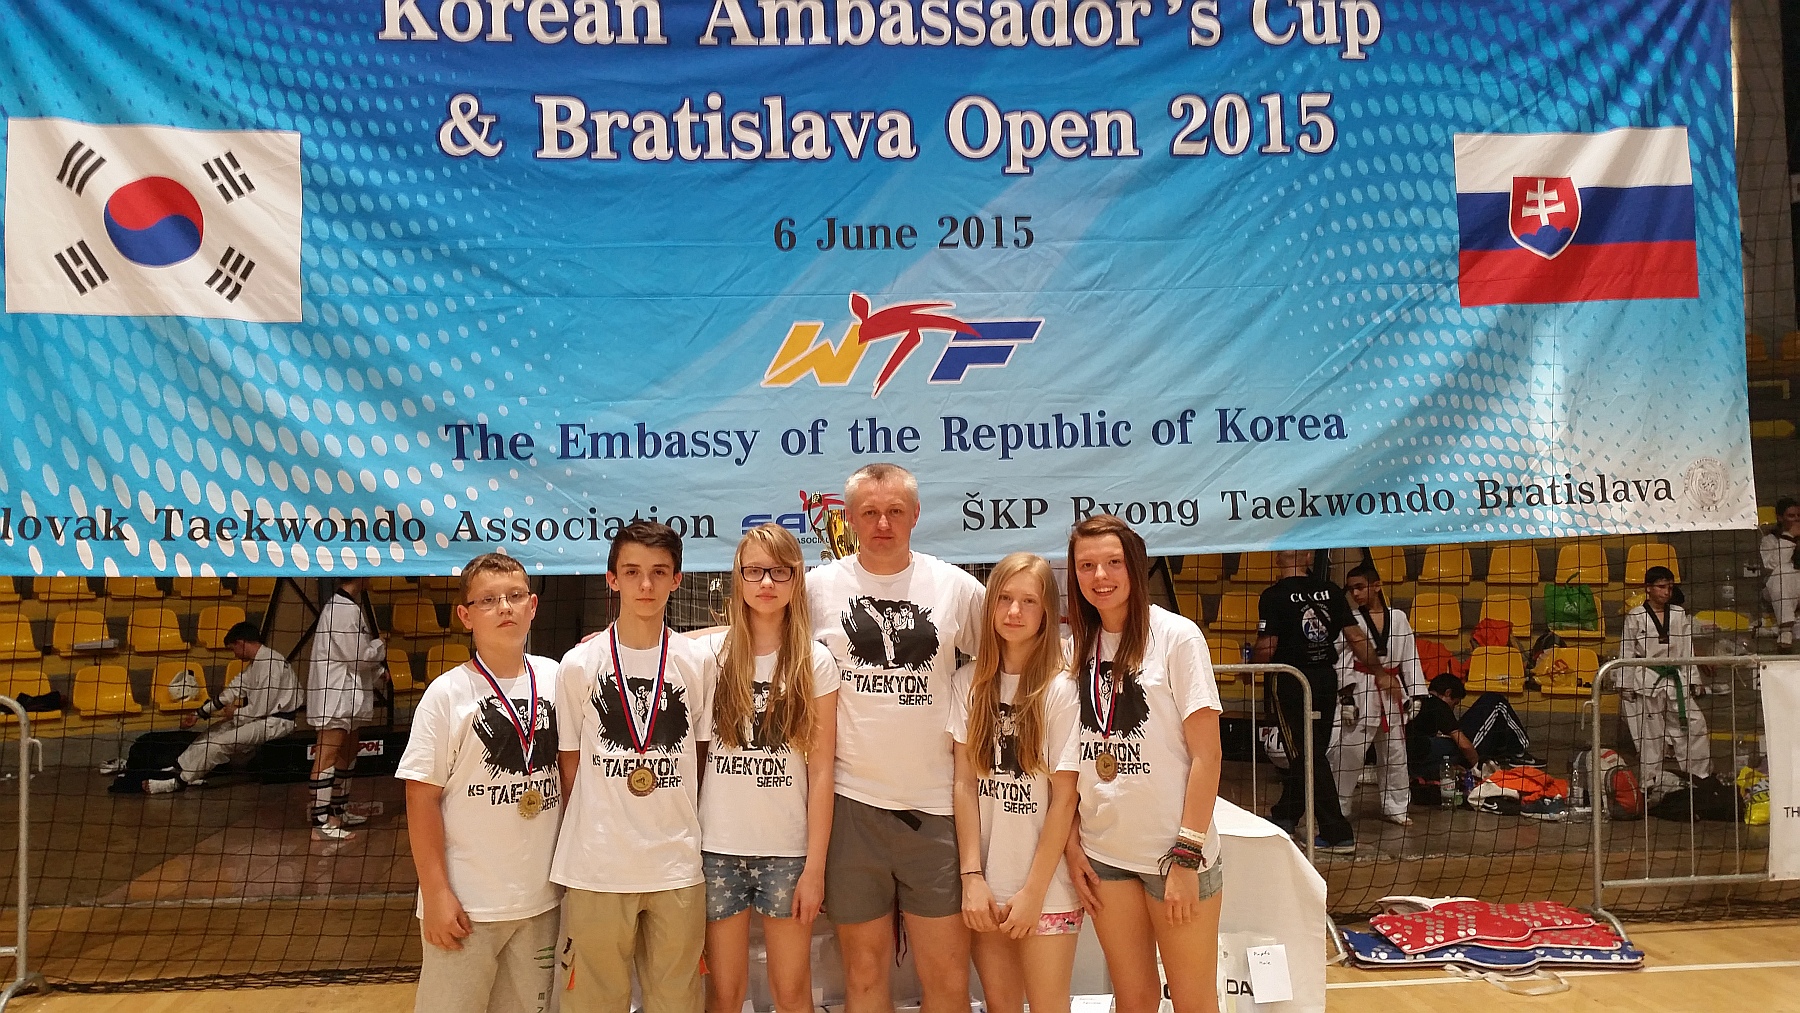 Otwarte Midzynarodowe Mistrzostwa Sowacji - Bratislava Open 2015 w taekwondo olimpijskim z udziaem KS Taekyon Sierpc, 5-6.06.2015 r.